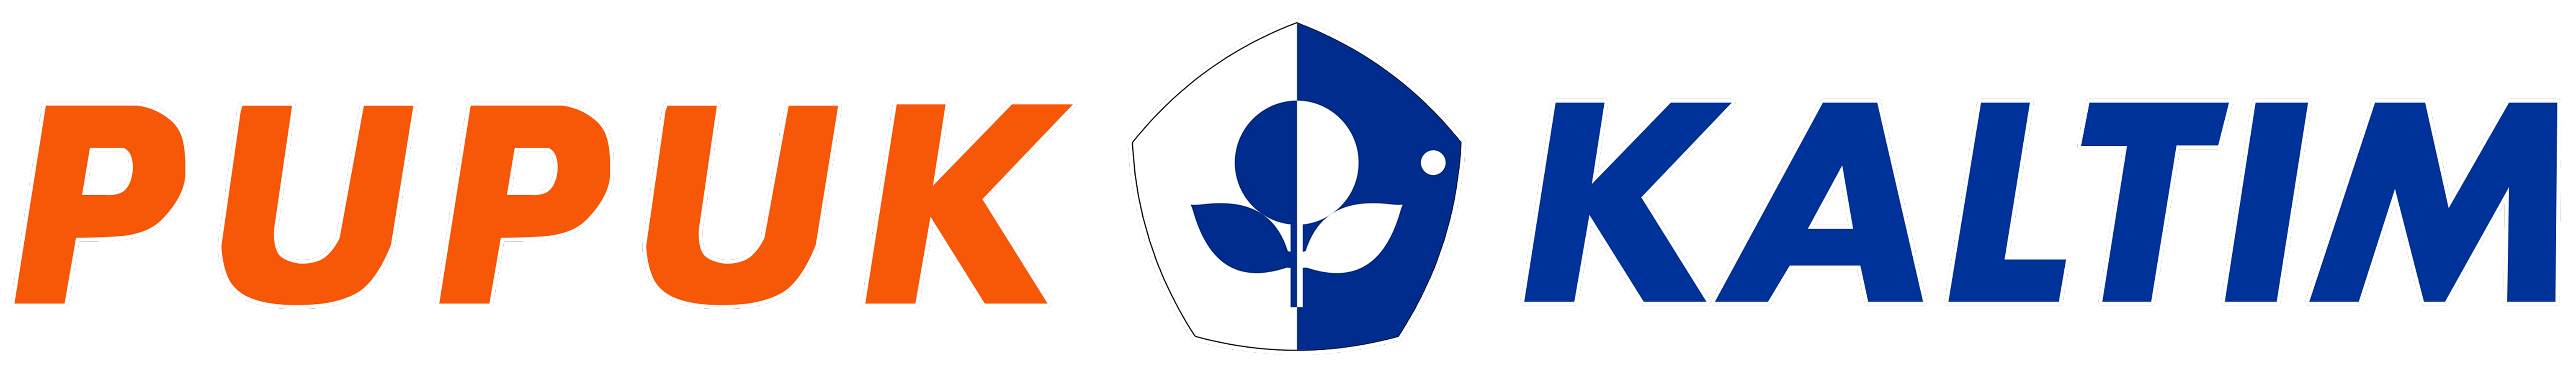 Pupuk Kaltim's logo